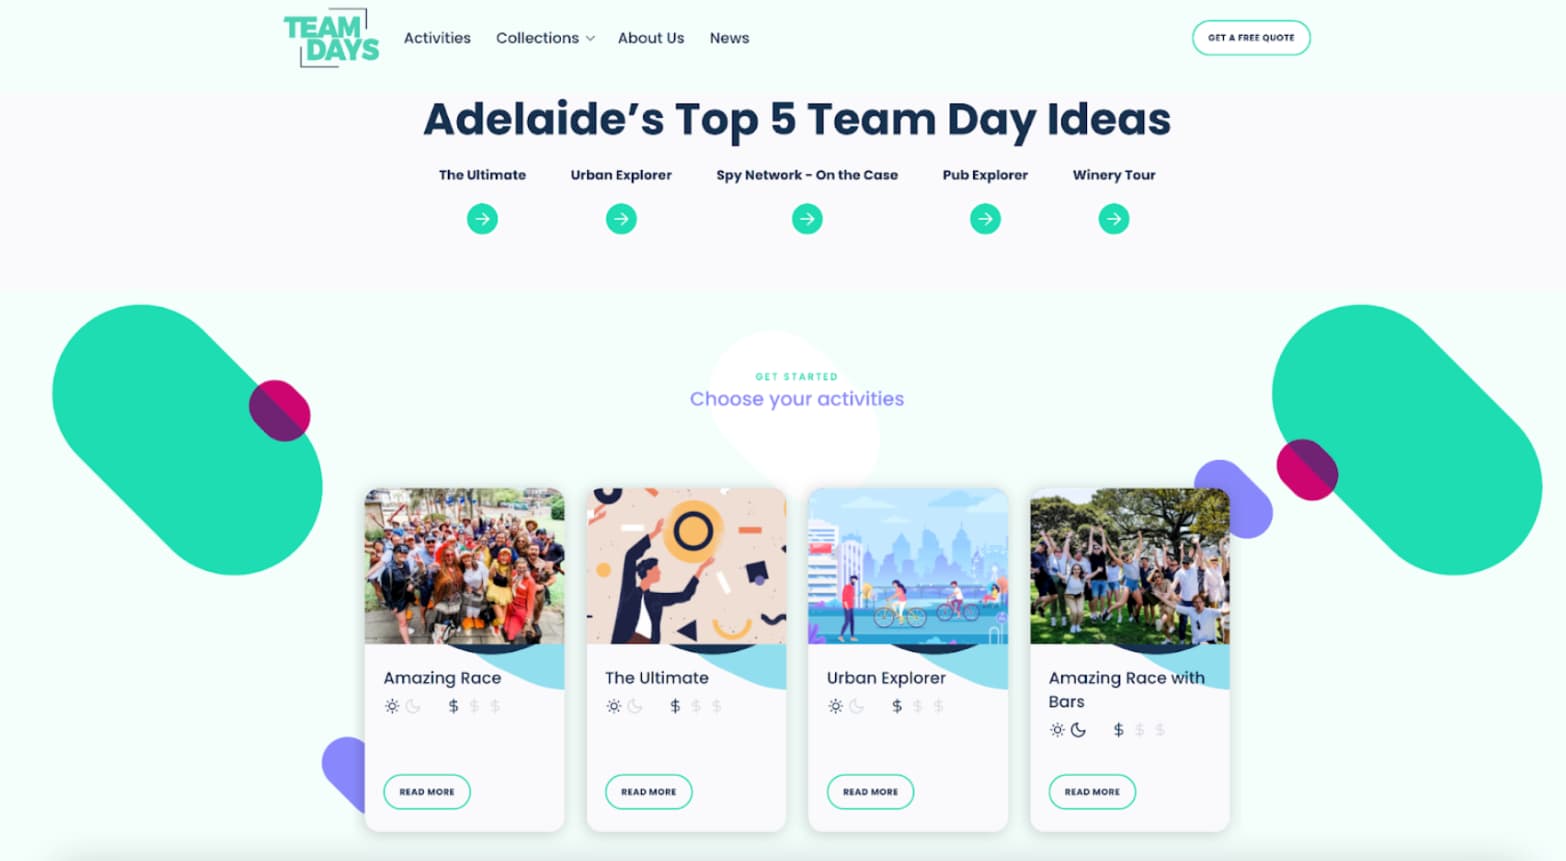 Team Days Adelaide